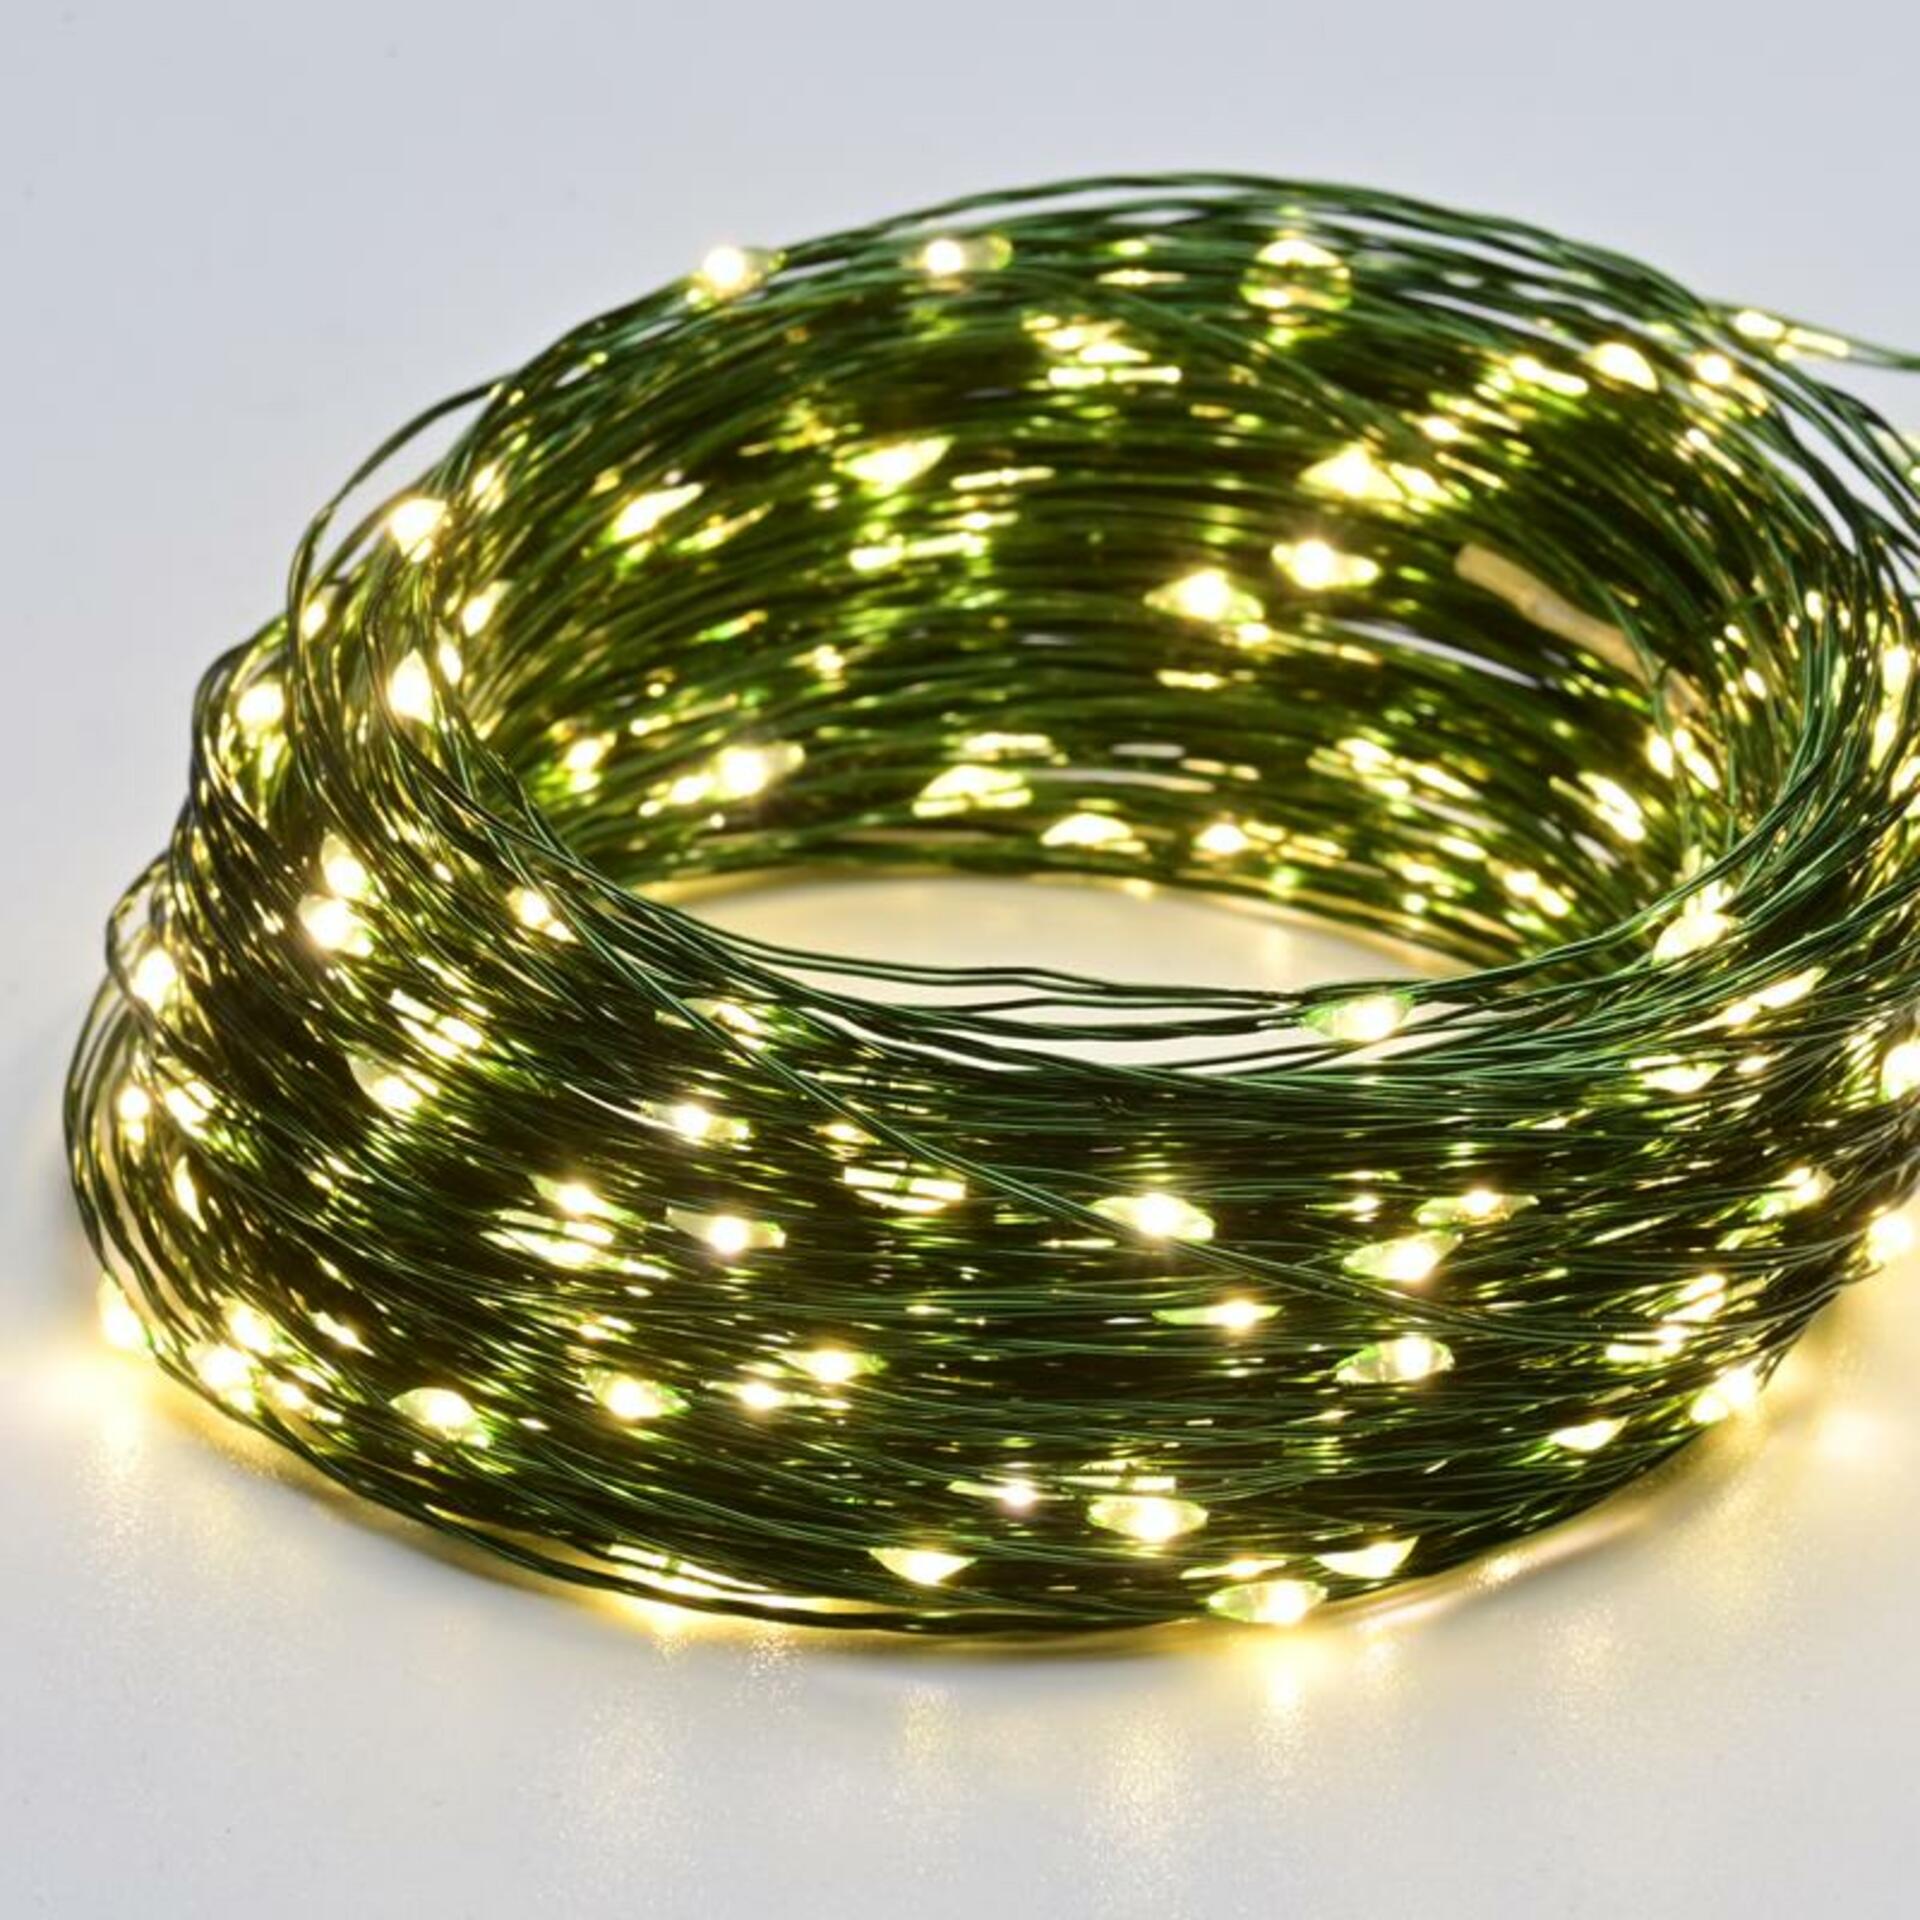 ACA Lighting 50 LED dekorační řetěz WW zelený měďený kabel na baterie 3xAA IP20 5m+10cm X0150151